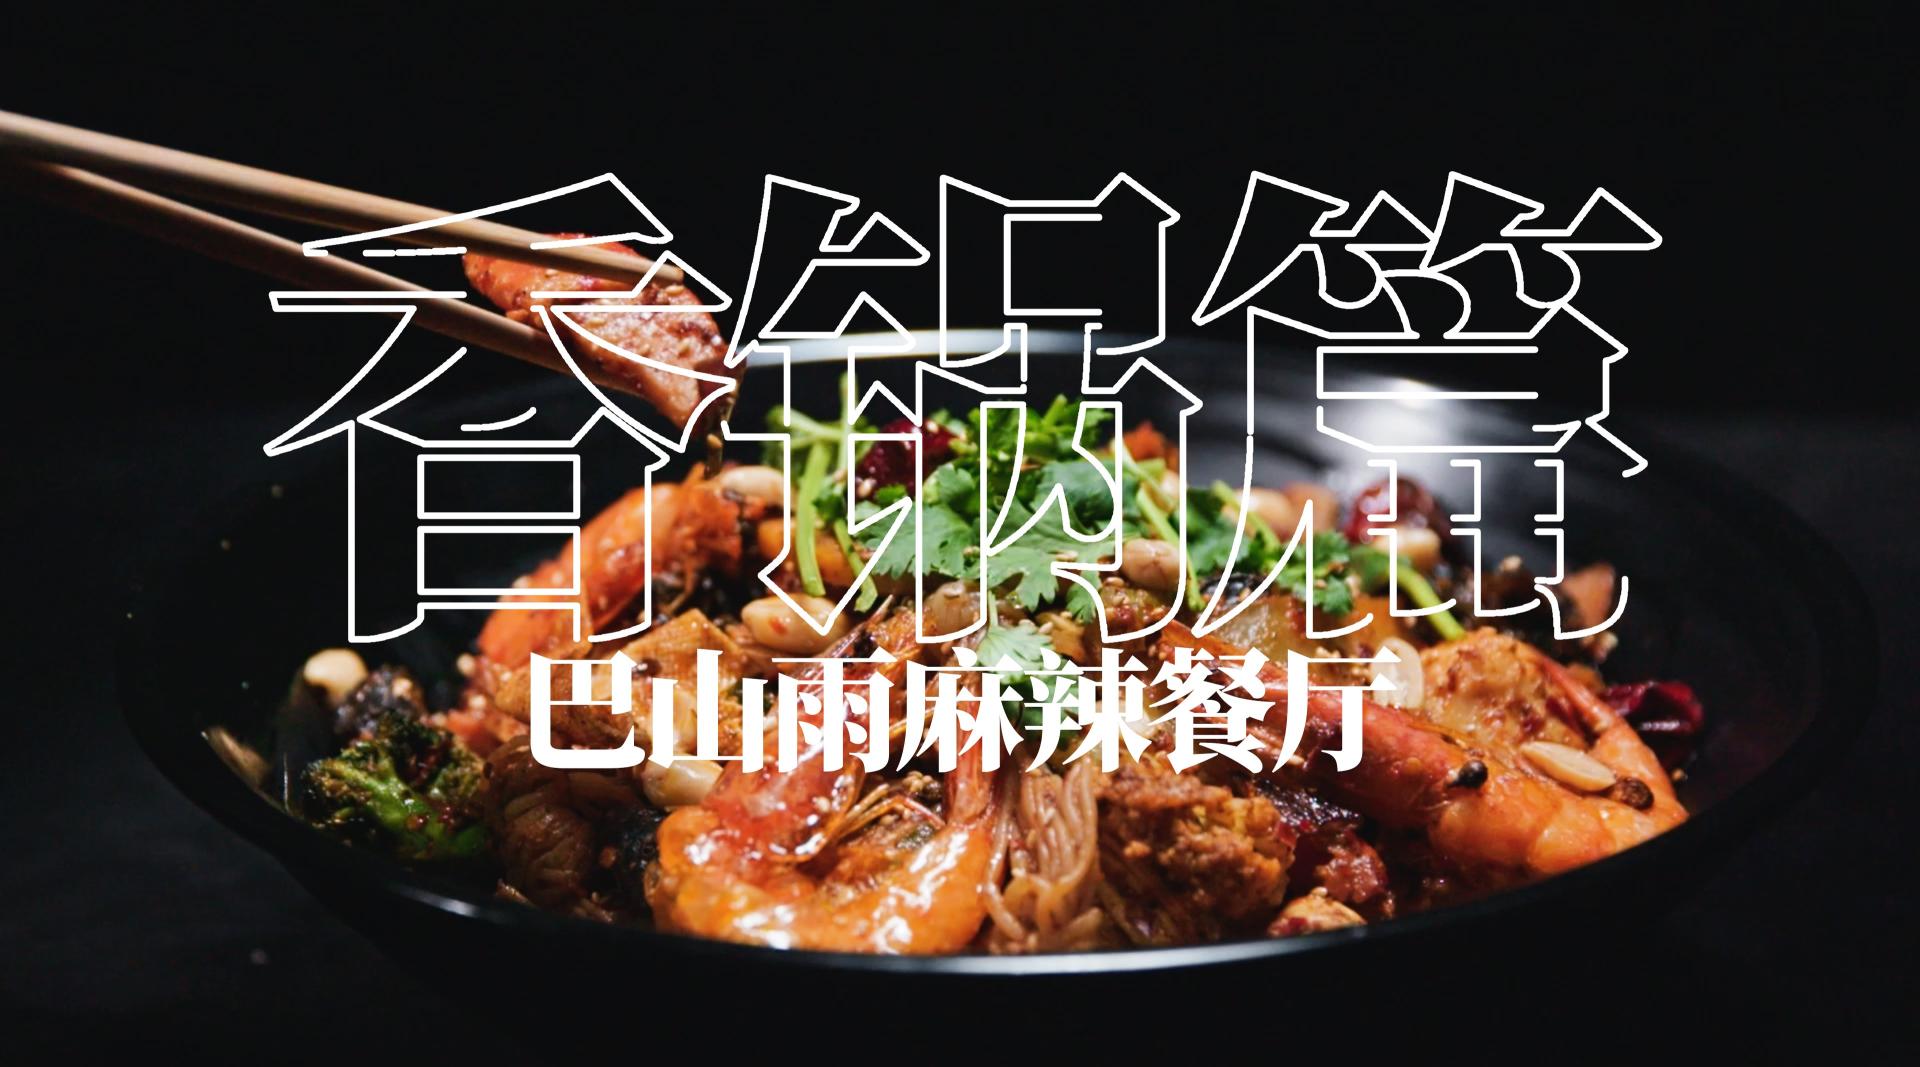 巴山雨麻辣餐厅·香锅篇 | 2019·宣传片